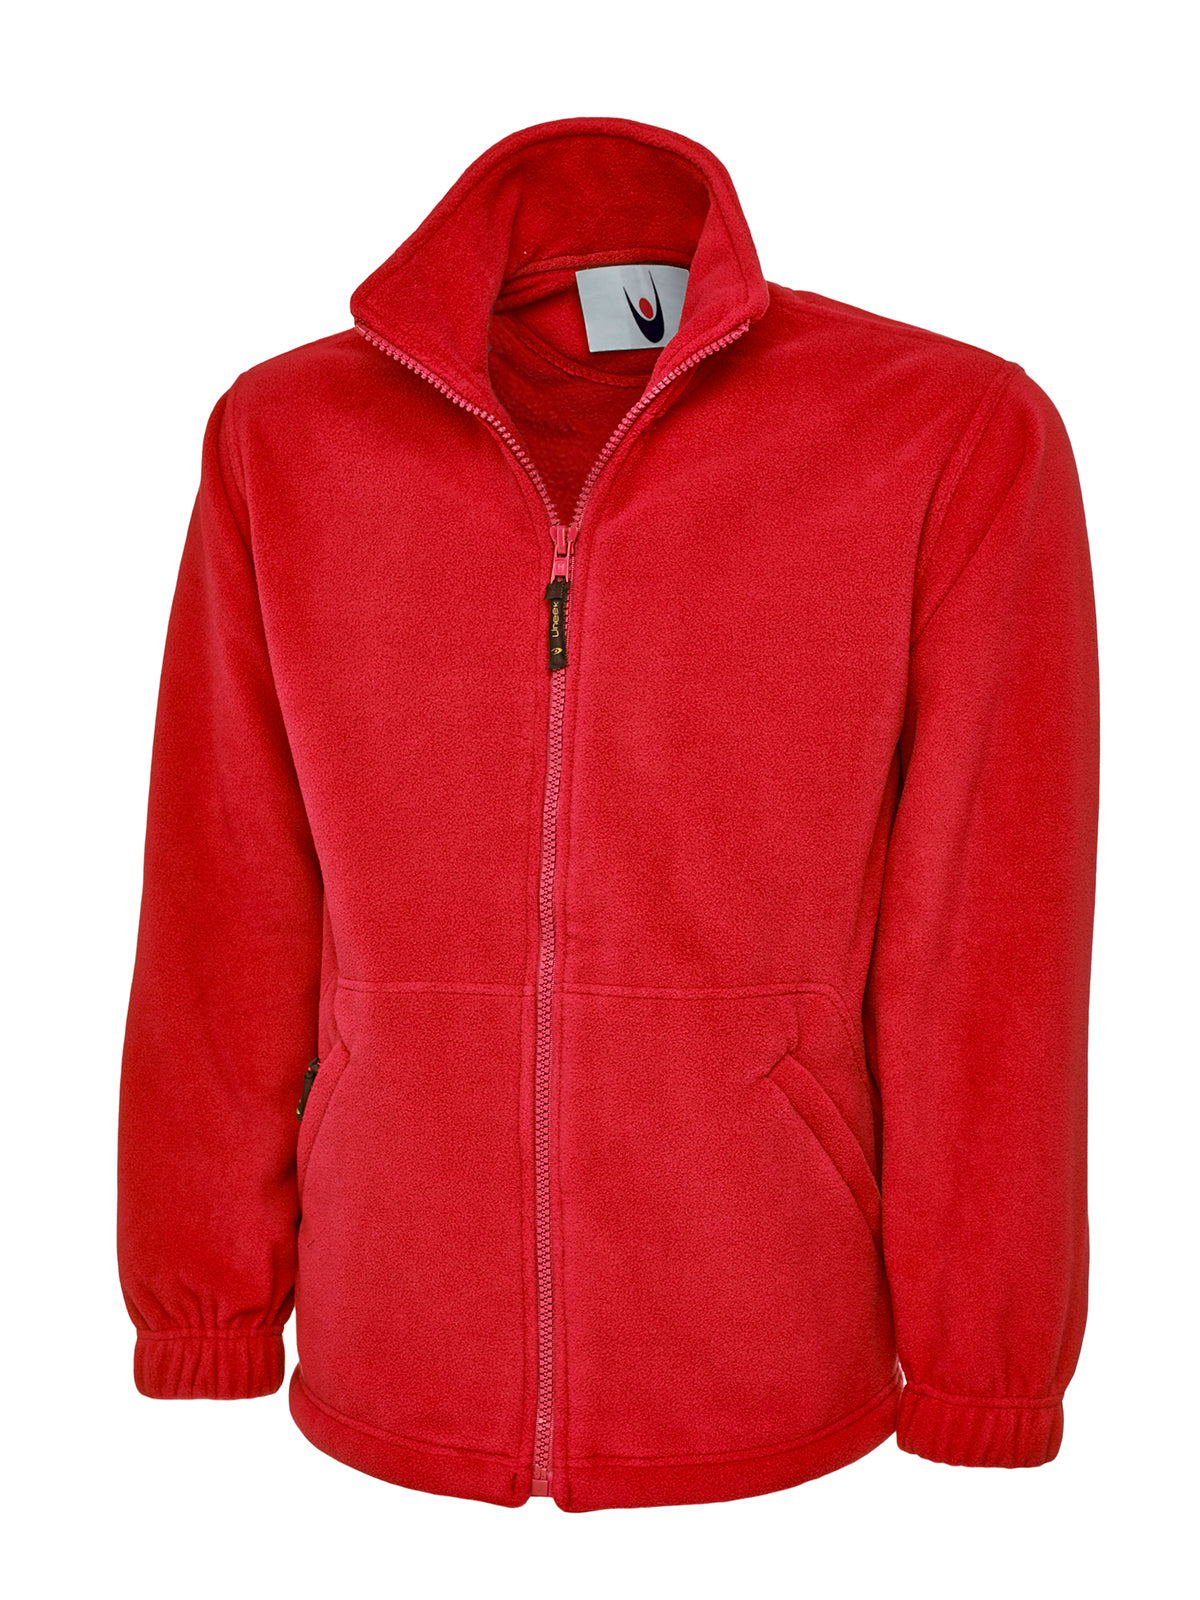 Uneek Classic Full Zip Micro Fleece Jacket UC604 - Red